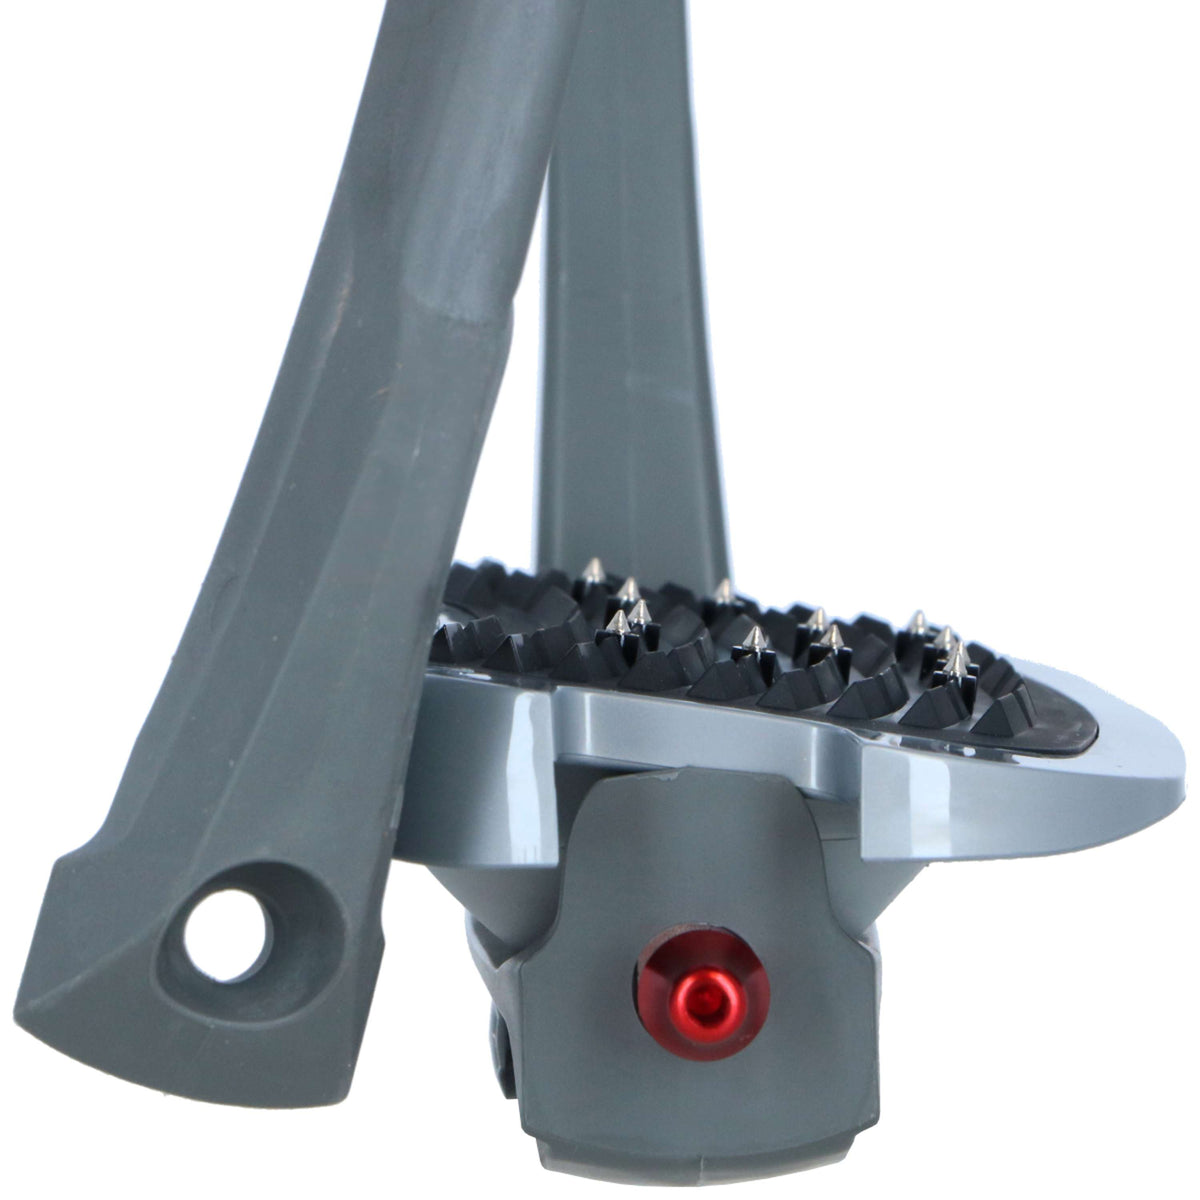 Flex-On Sicherheitsbügel Safe-On Inclined Ultra Grip Silver Grey/Grau/Grau